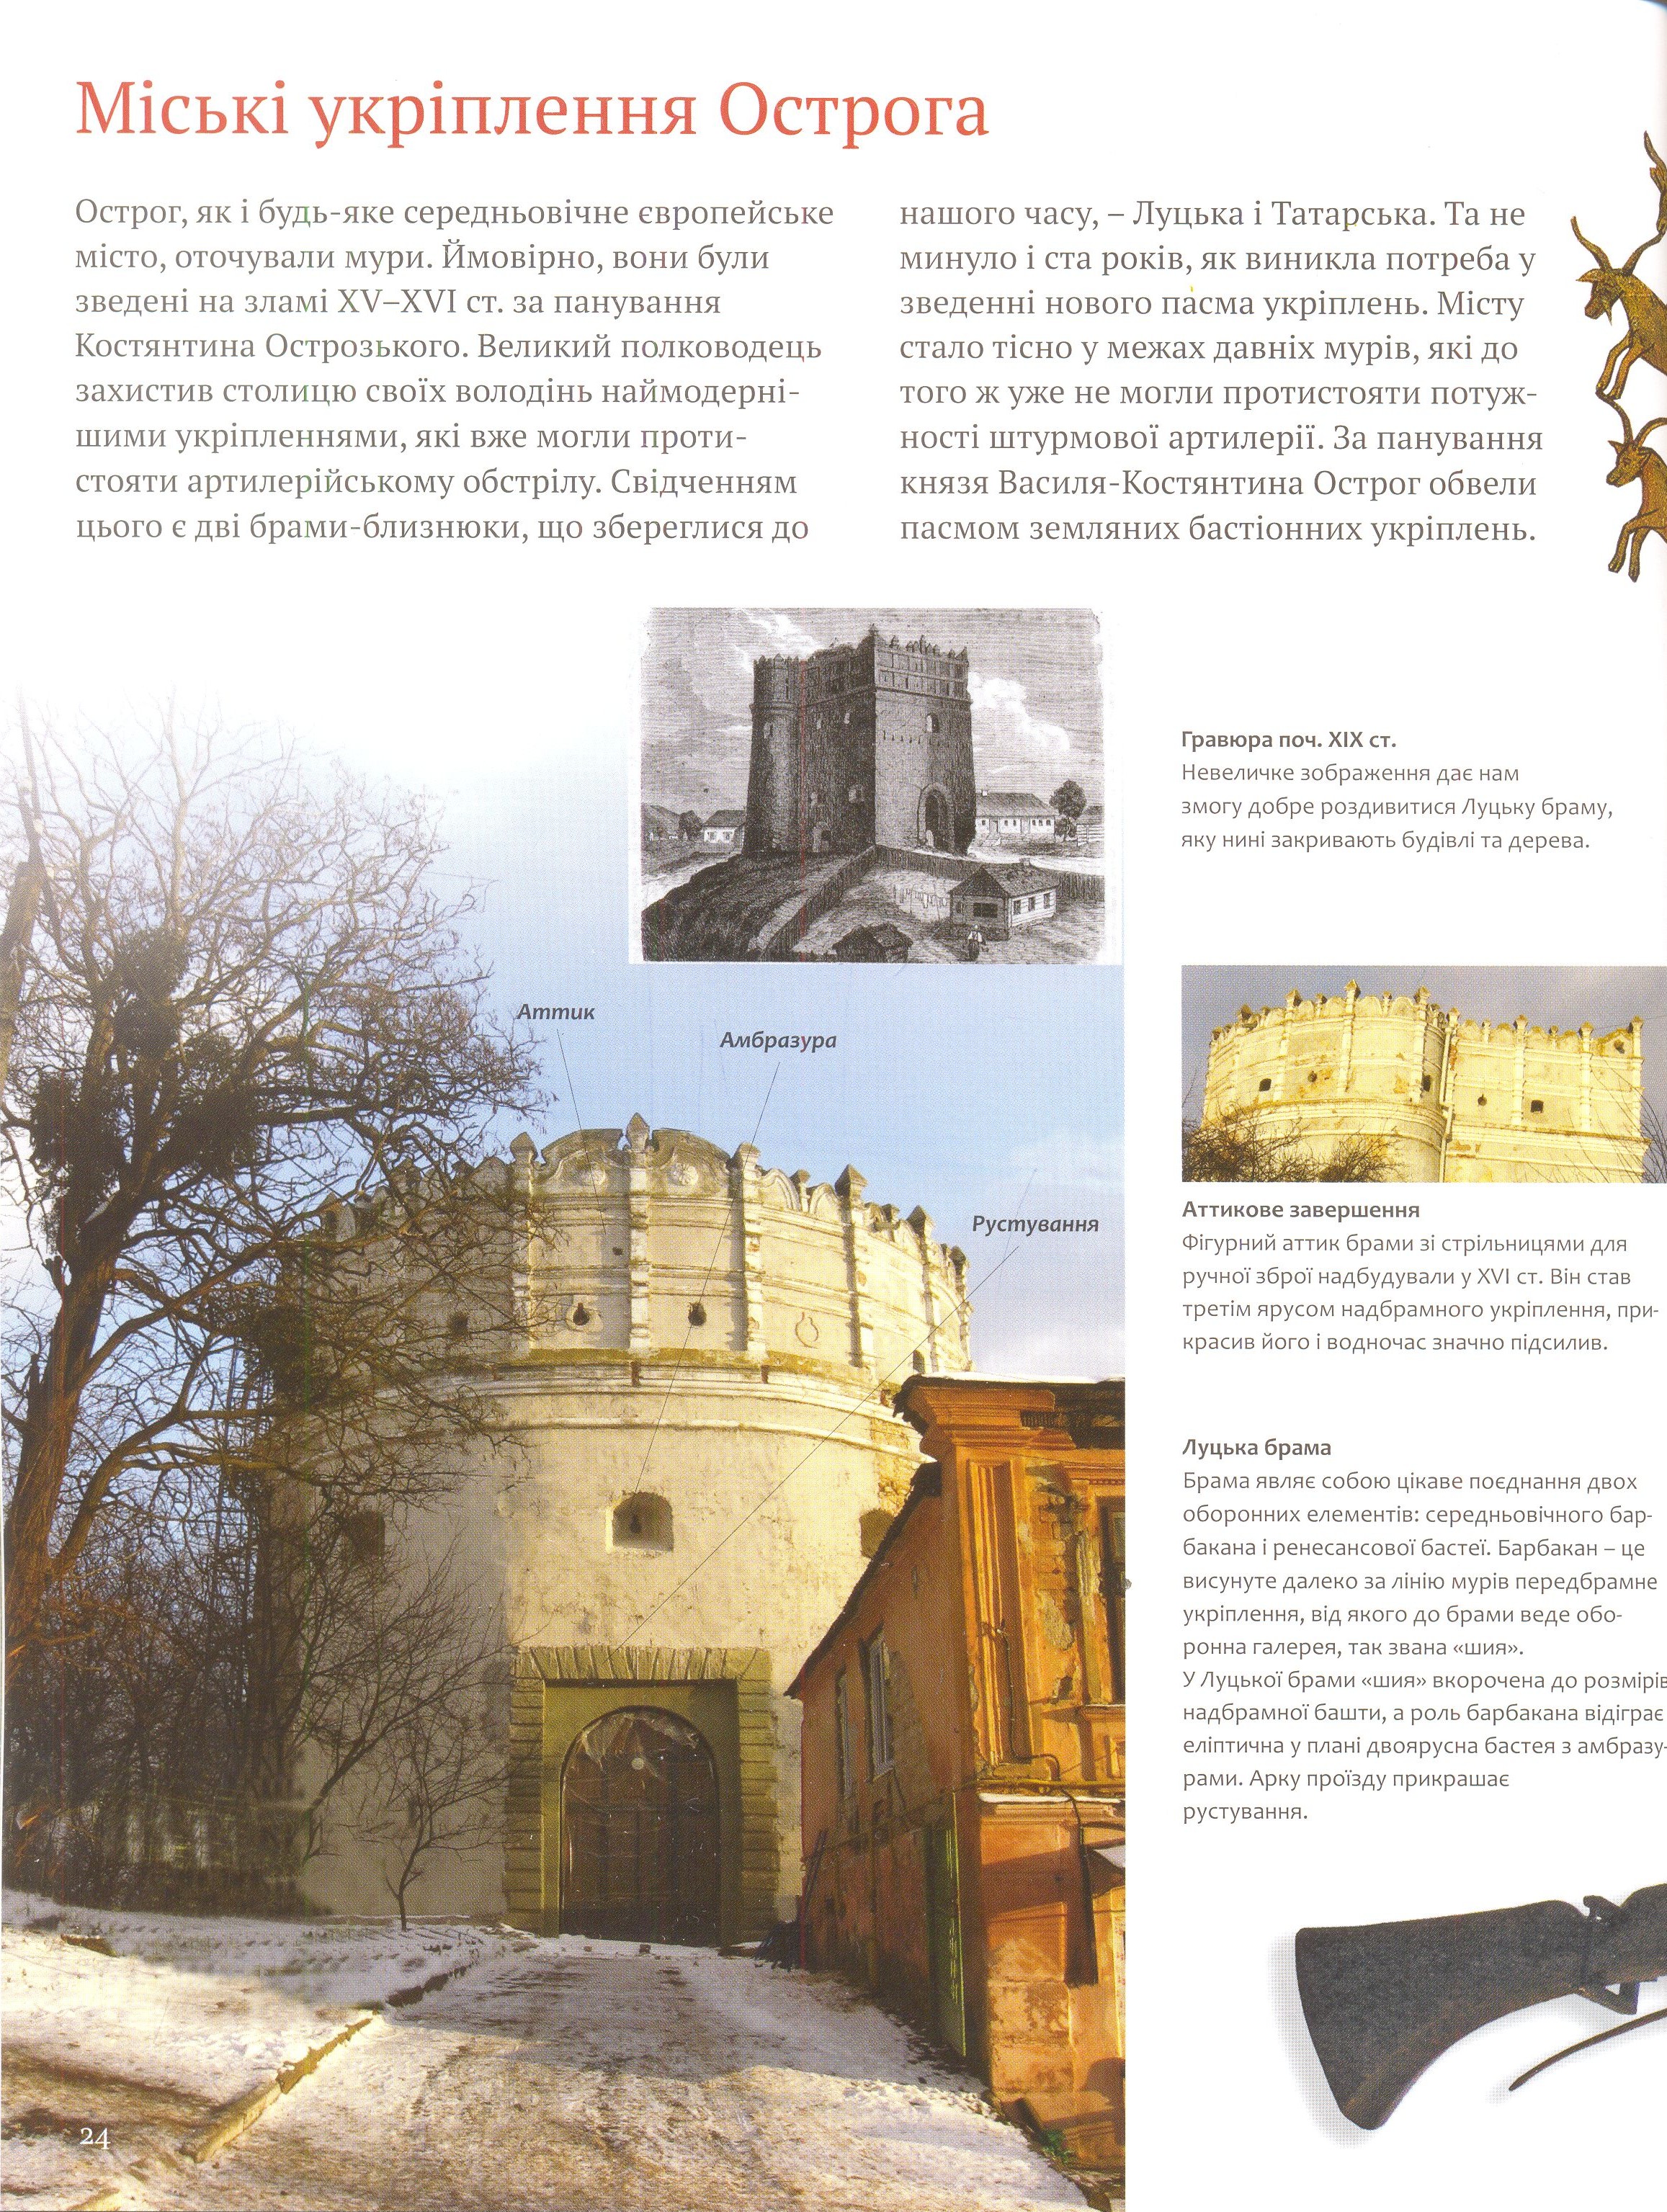 Твердині князів Острозьких. Замки, монастирі, храми XIV–XVII століть